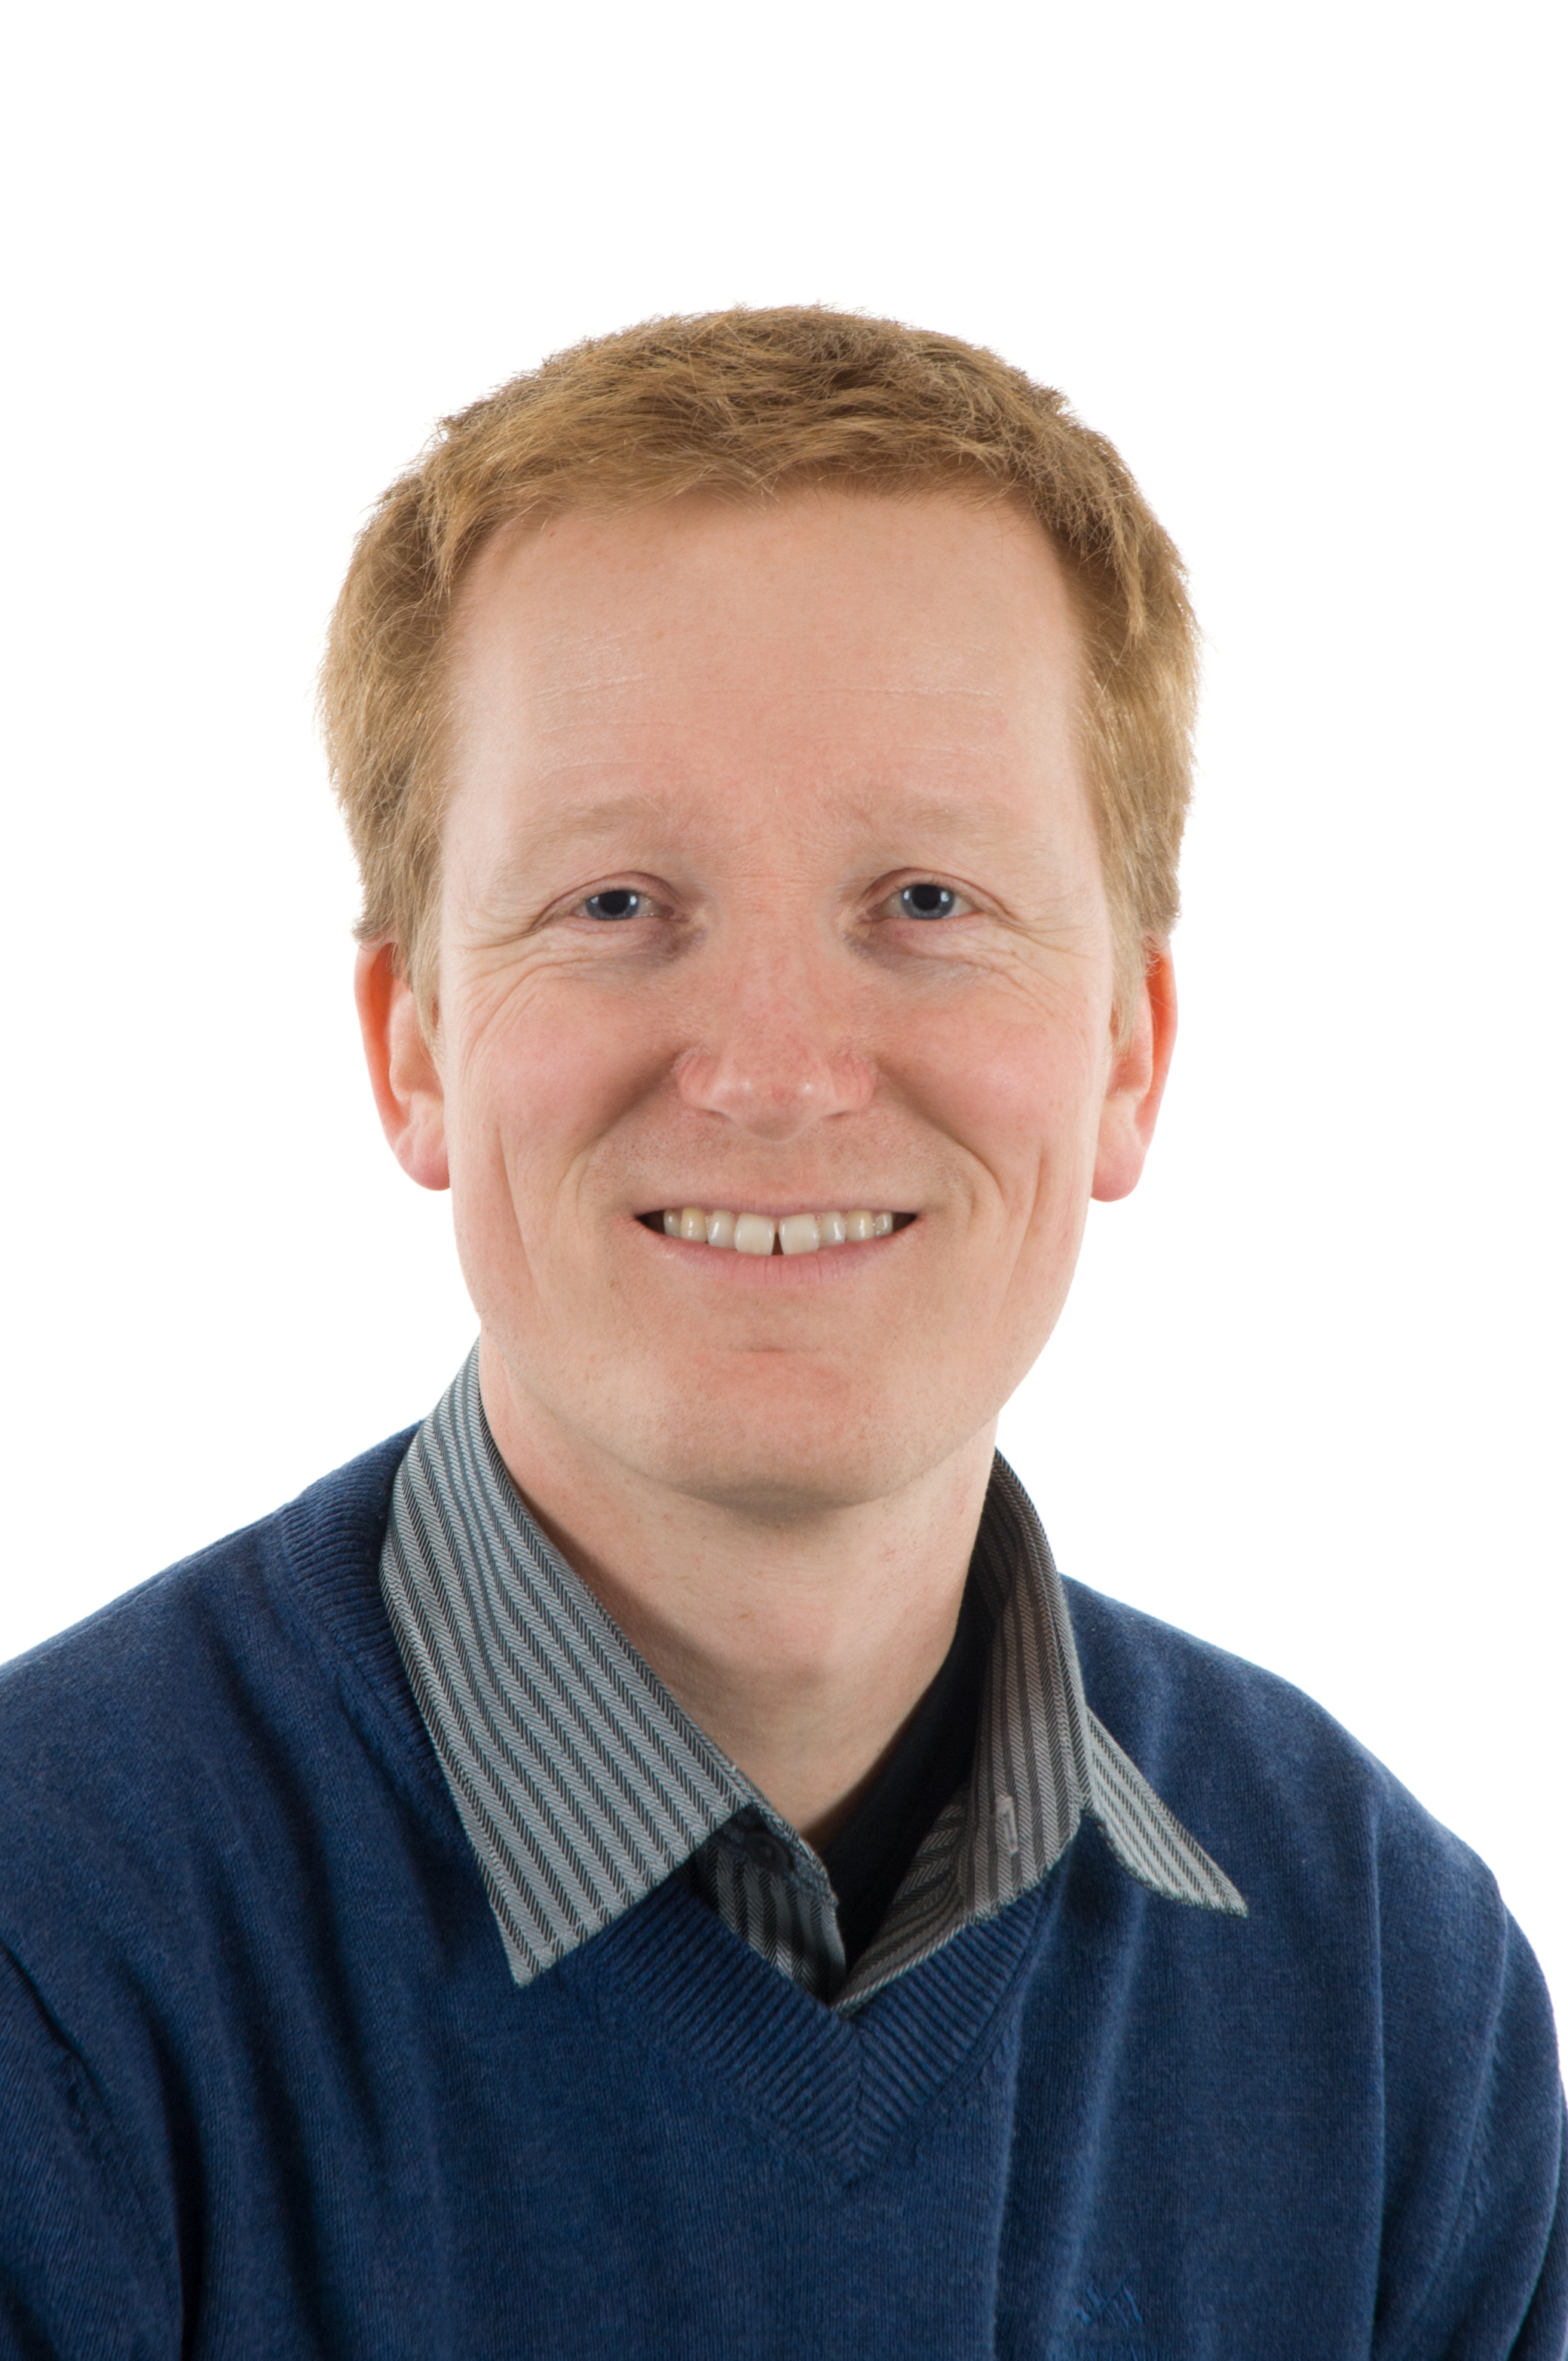 Pål Vegar Storeheier er avdelingsdirektør for forskning og utviklingsarbeid ved UiT.